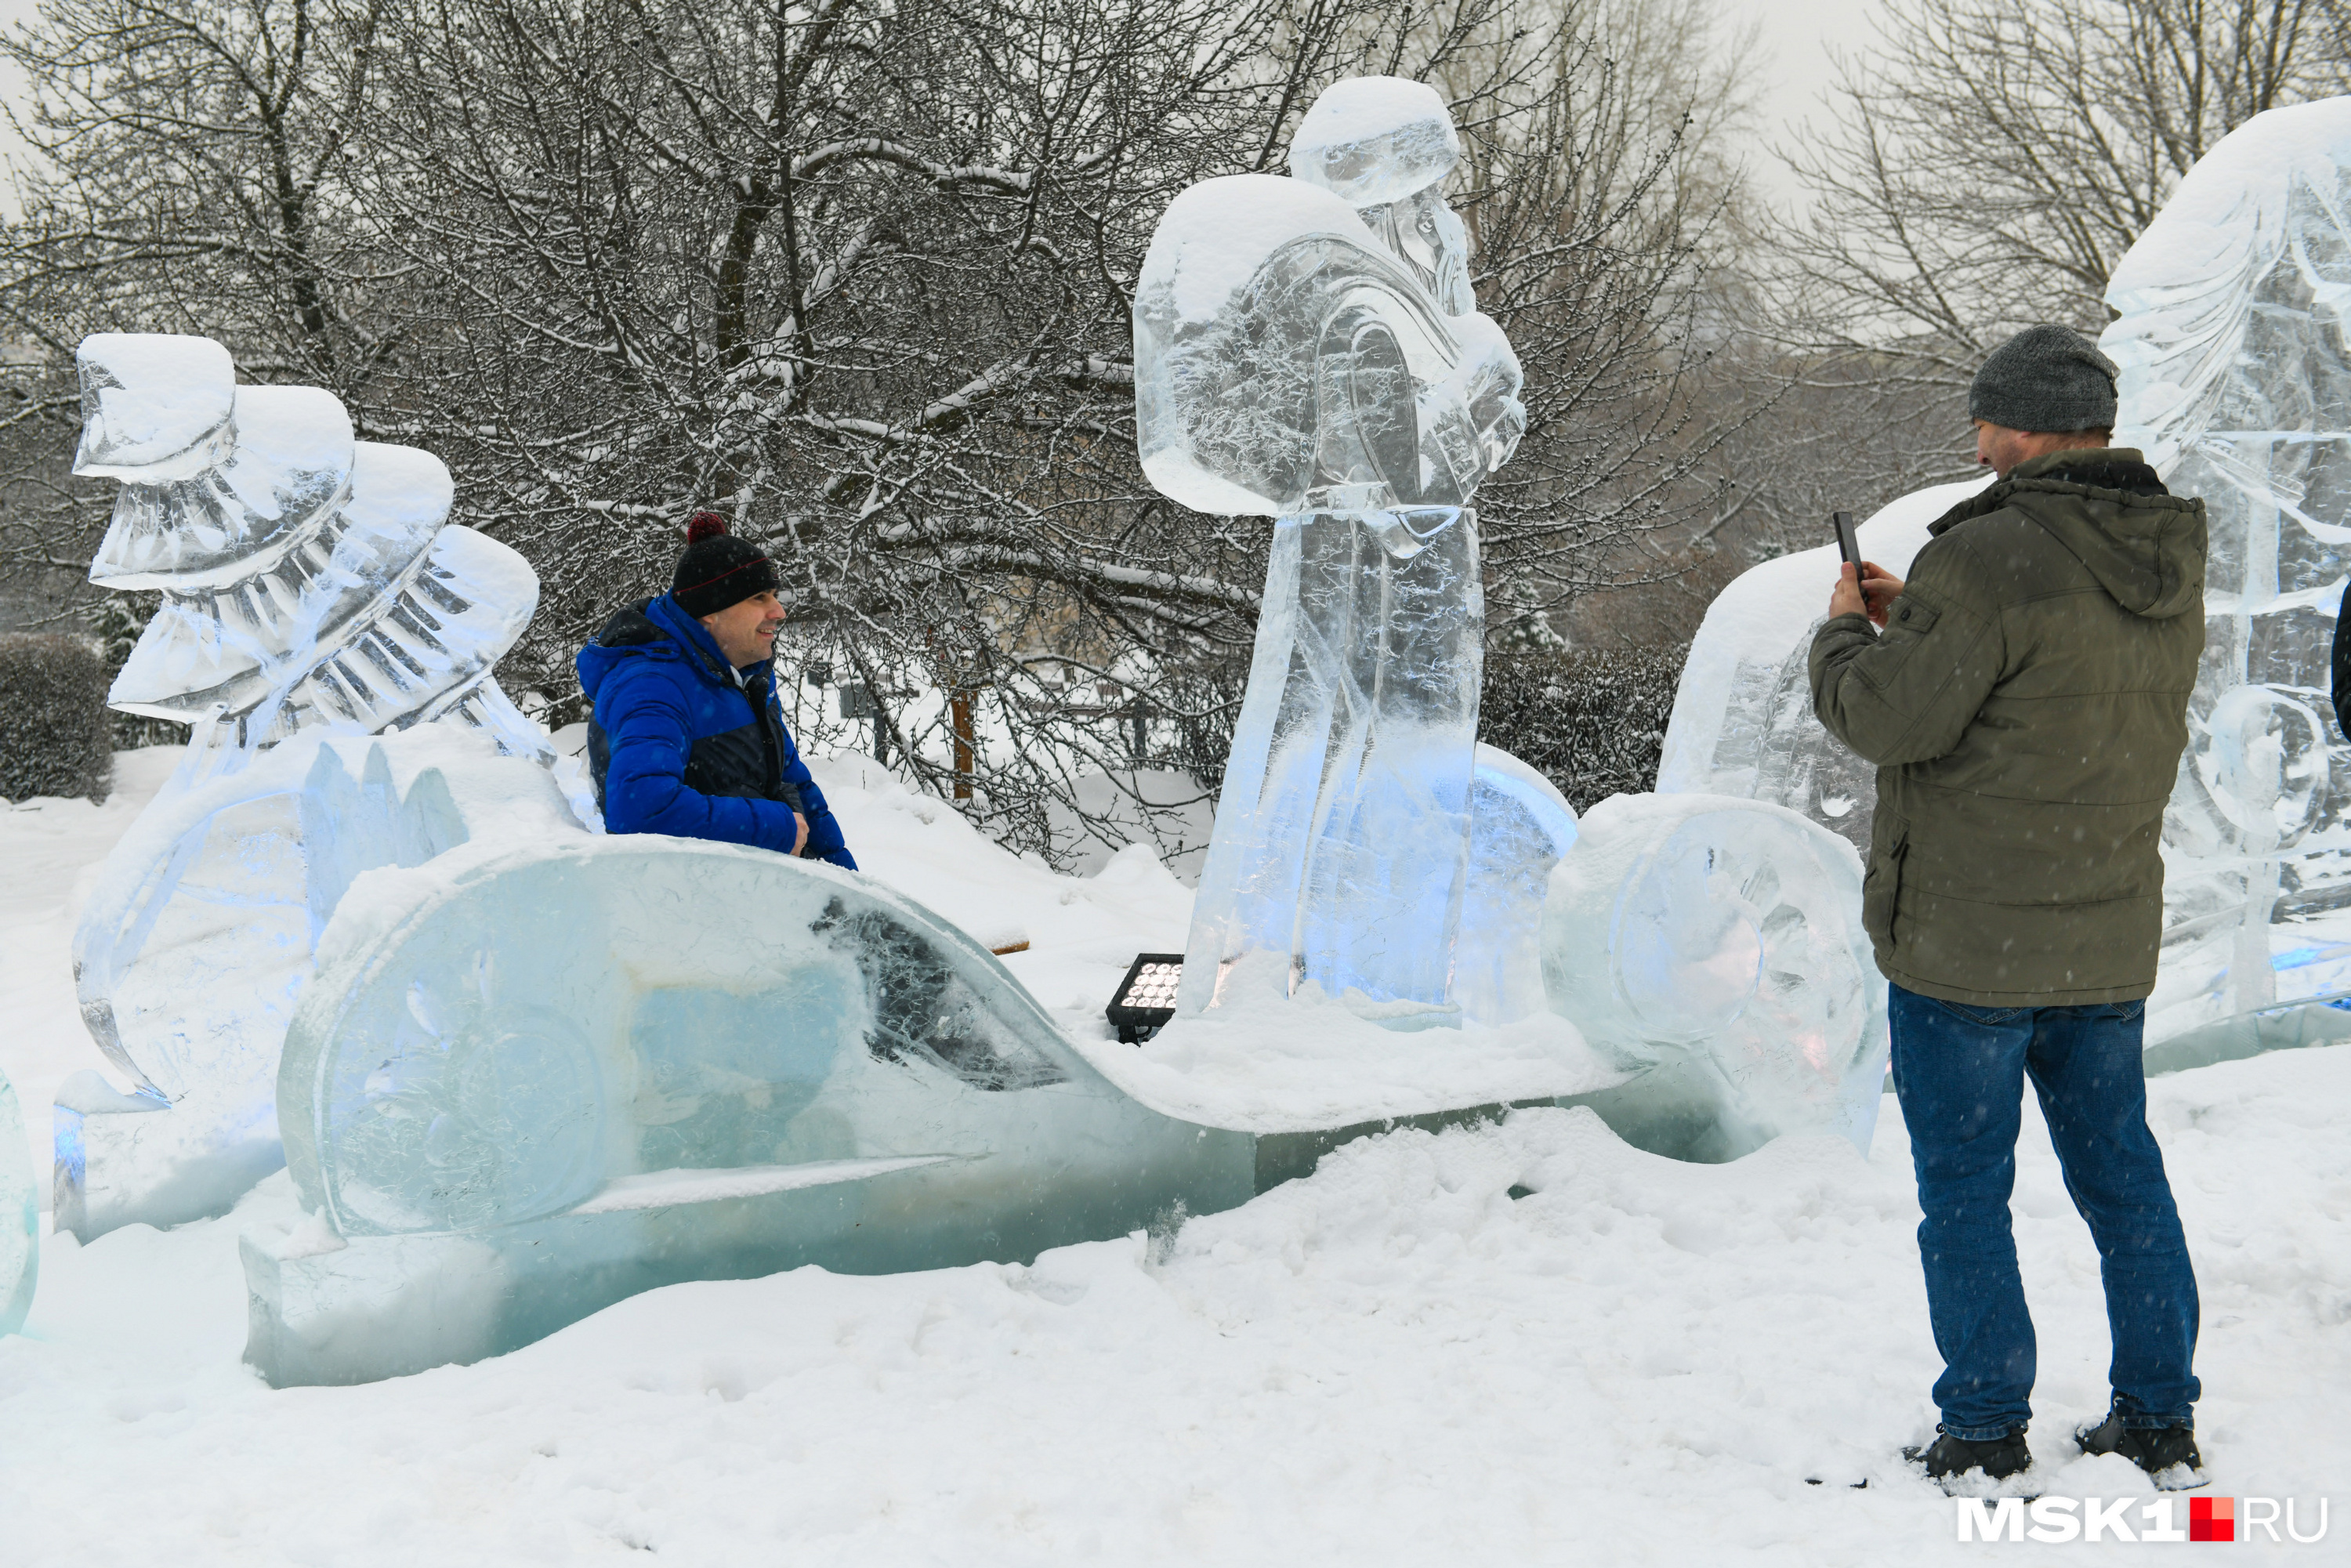 Посетители уже фотографируются на фоне ледяных скульптур